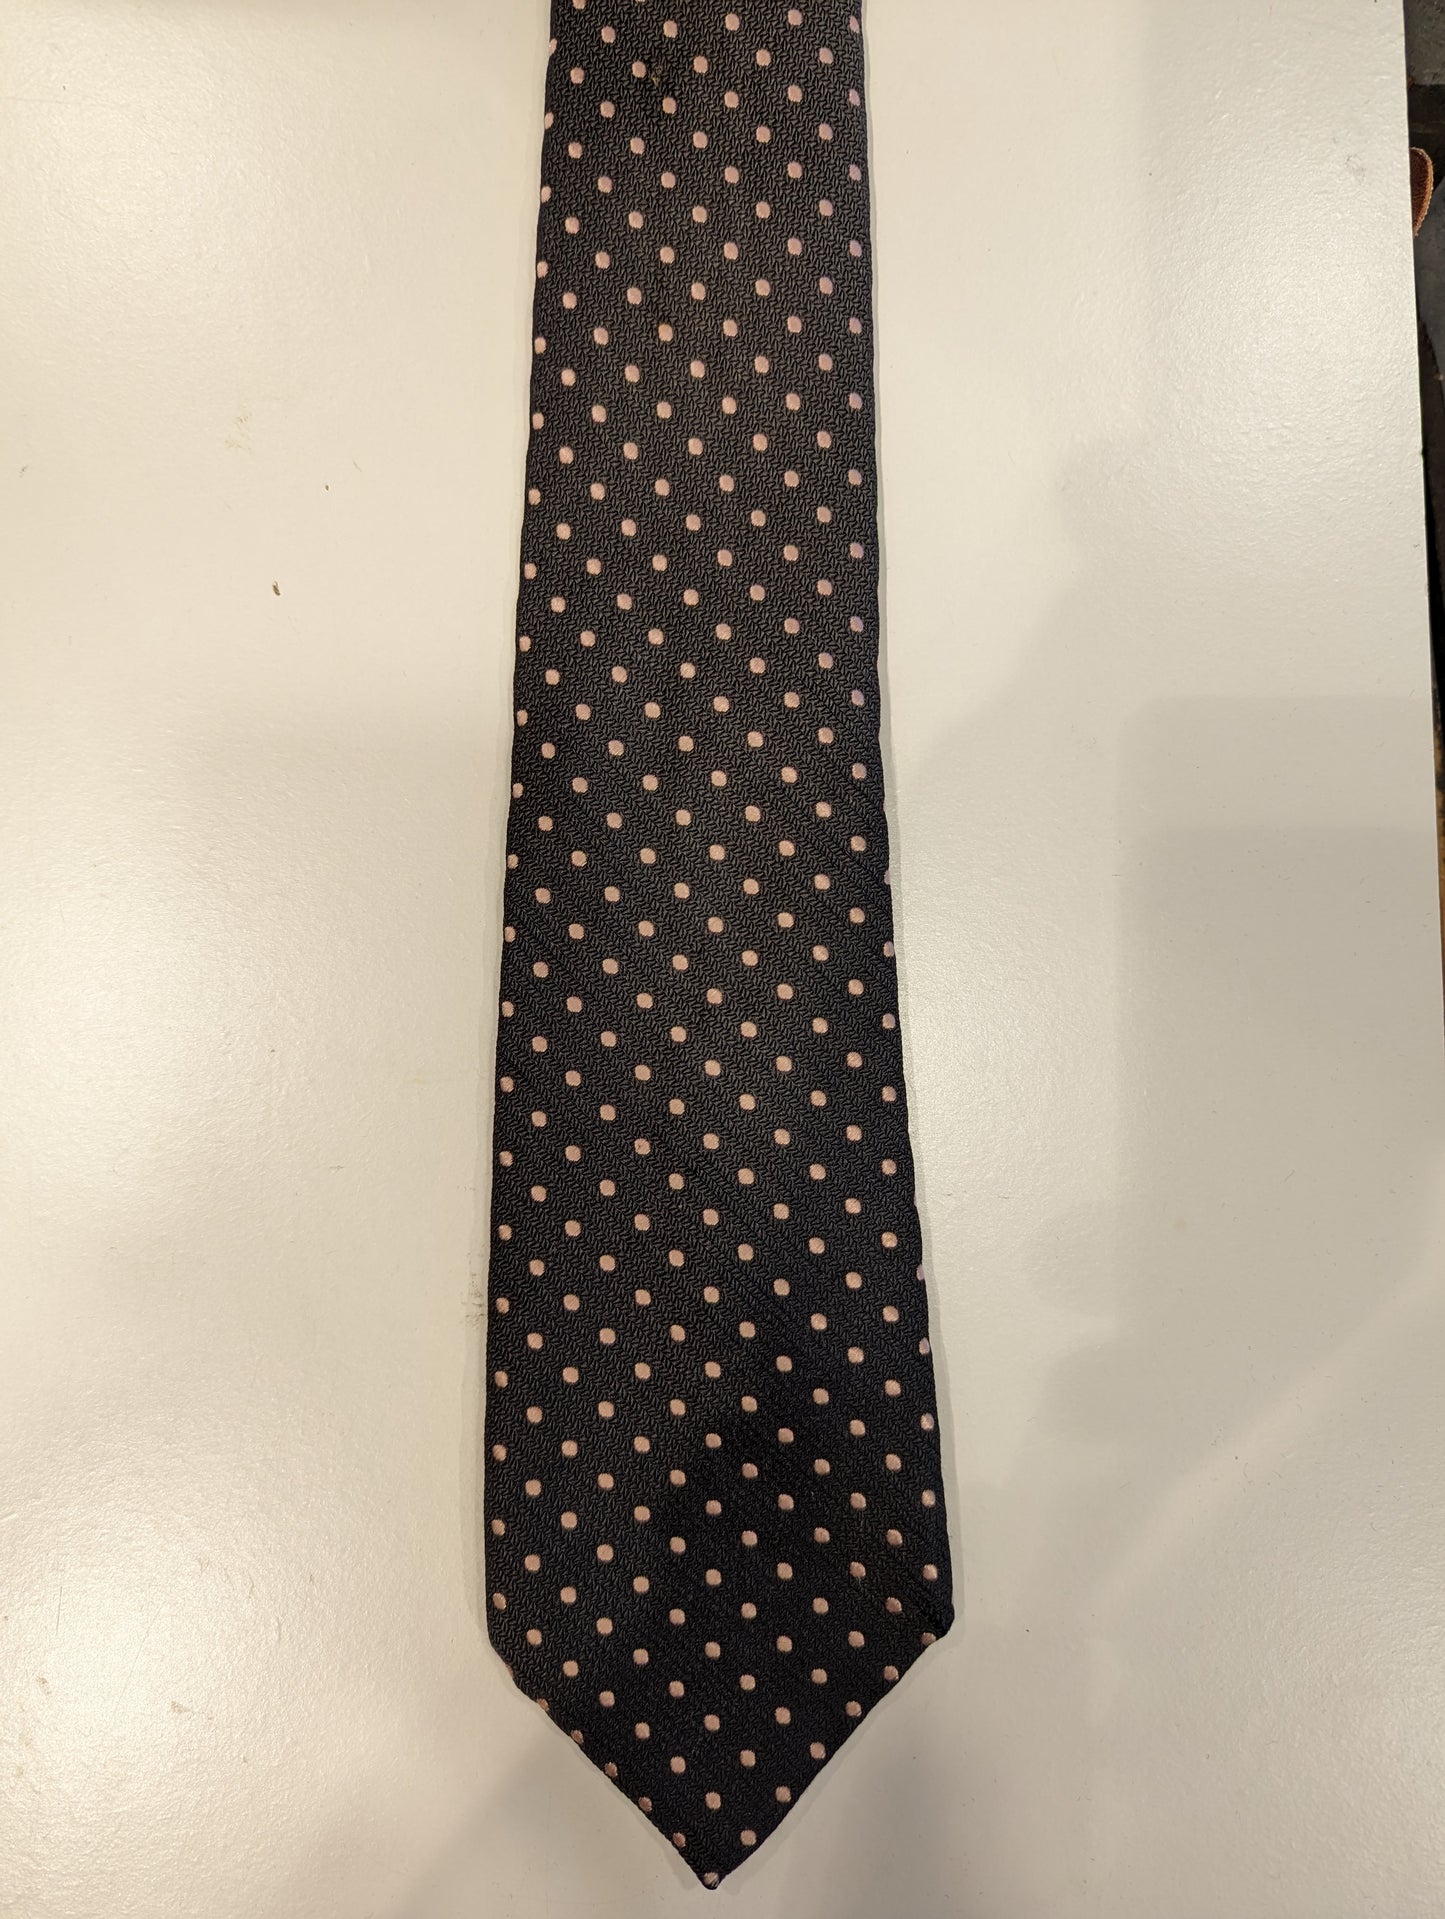 La cravatta di seta inglese con cappuccio. Moto rosa grigio.